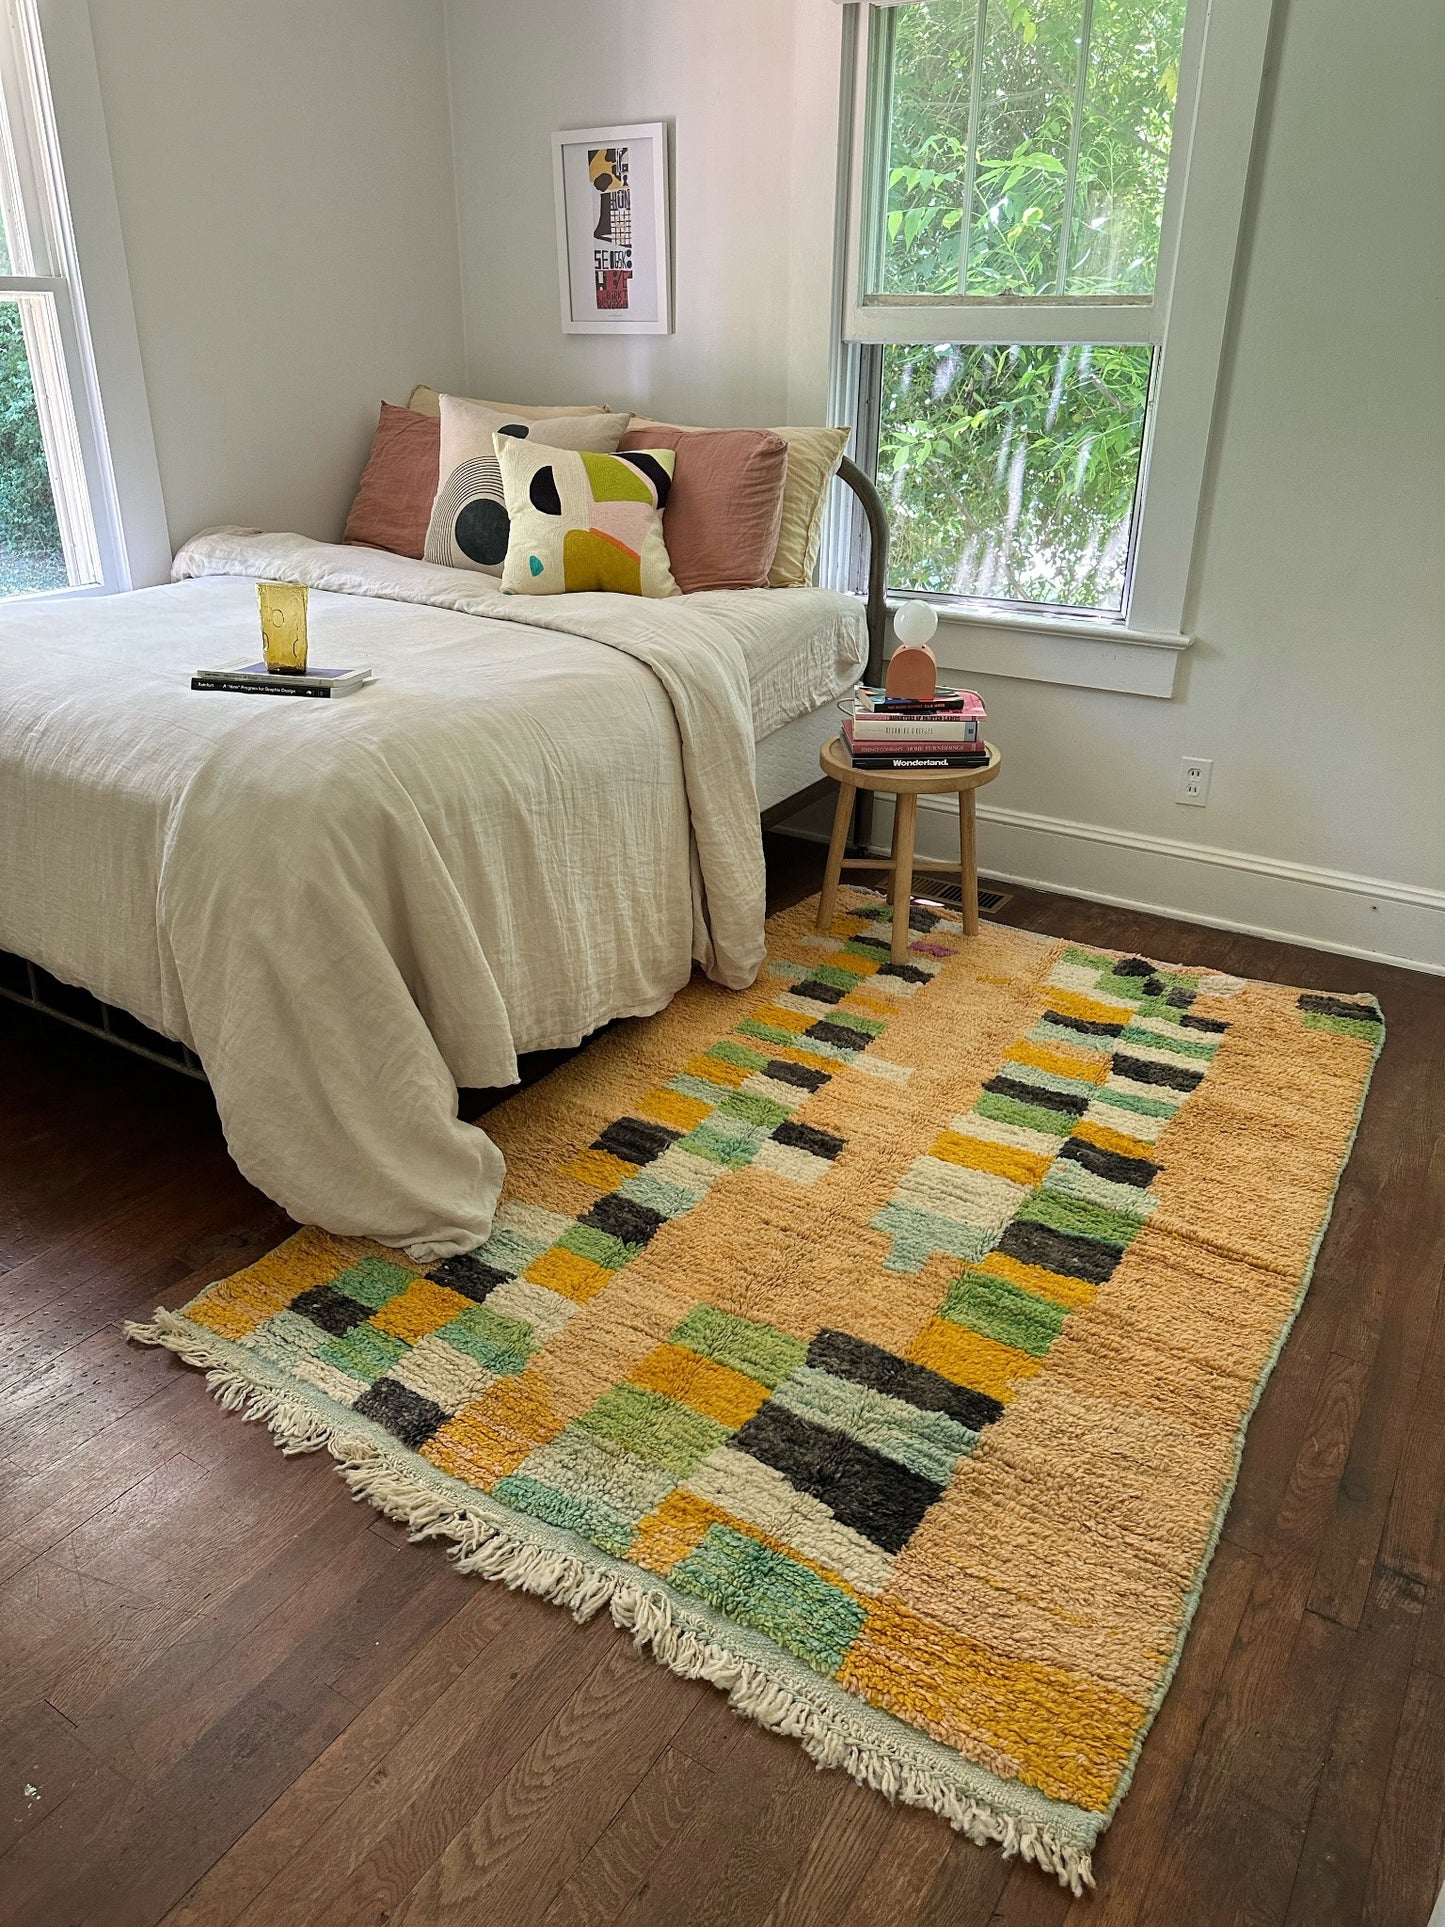 Abstract checks make Ezelle Moroccan Rug a fun choice in a bedroom.